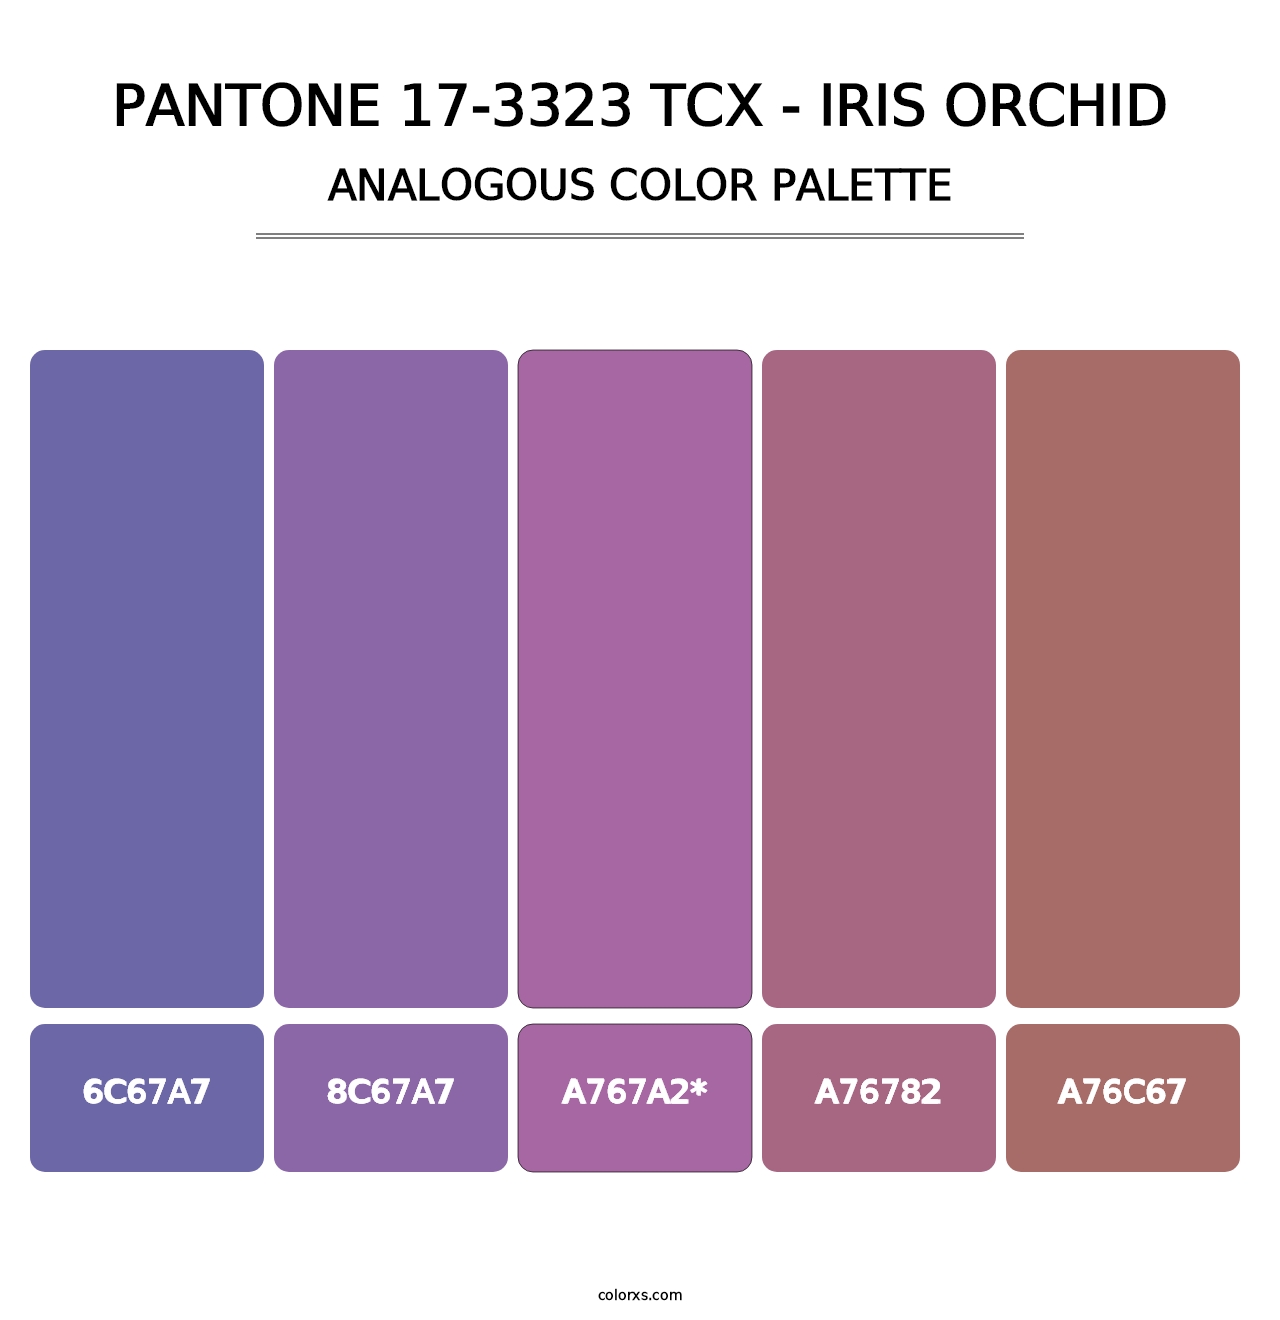 PANTONE 17-3323 TCX - Iris Orchid - Analogous Color Palette